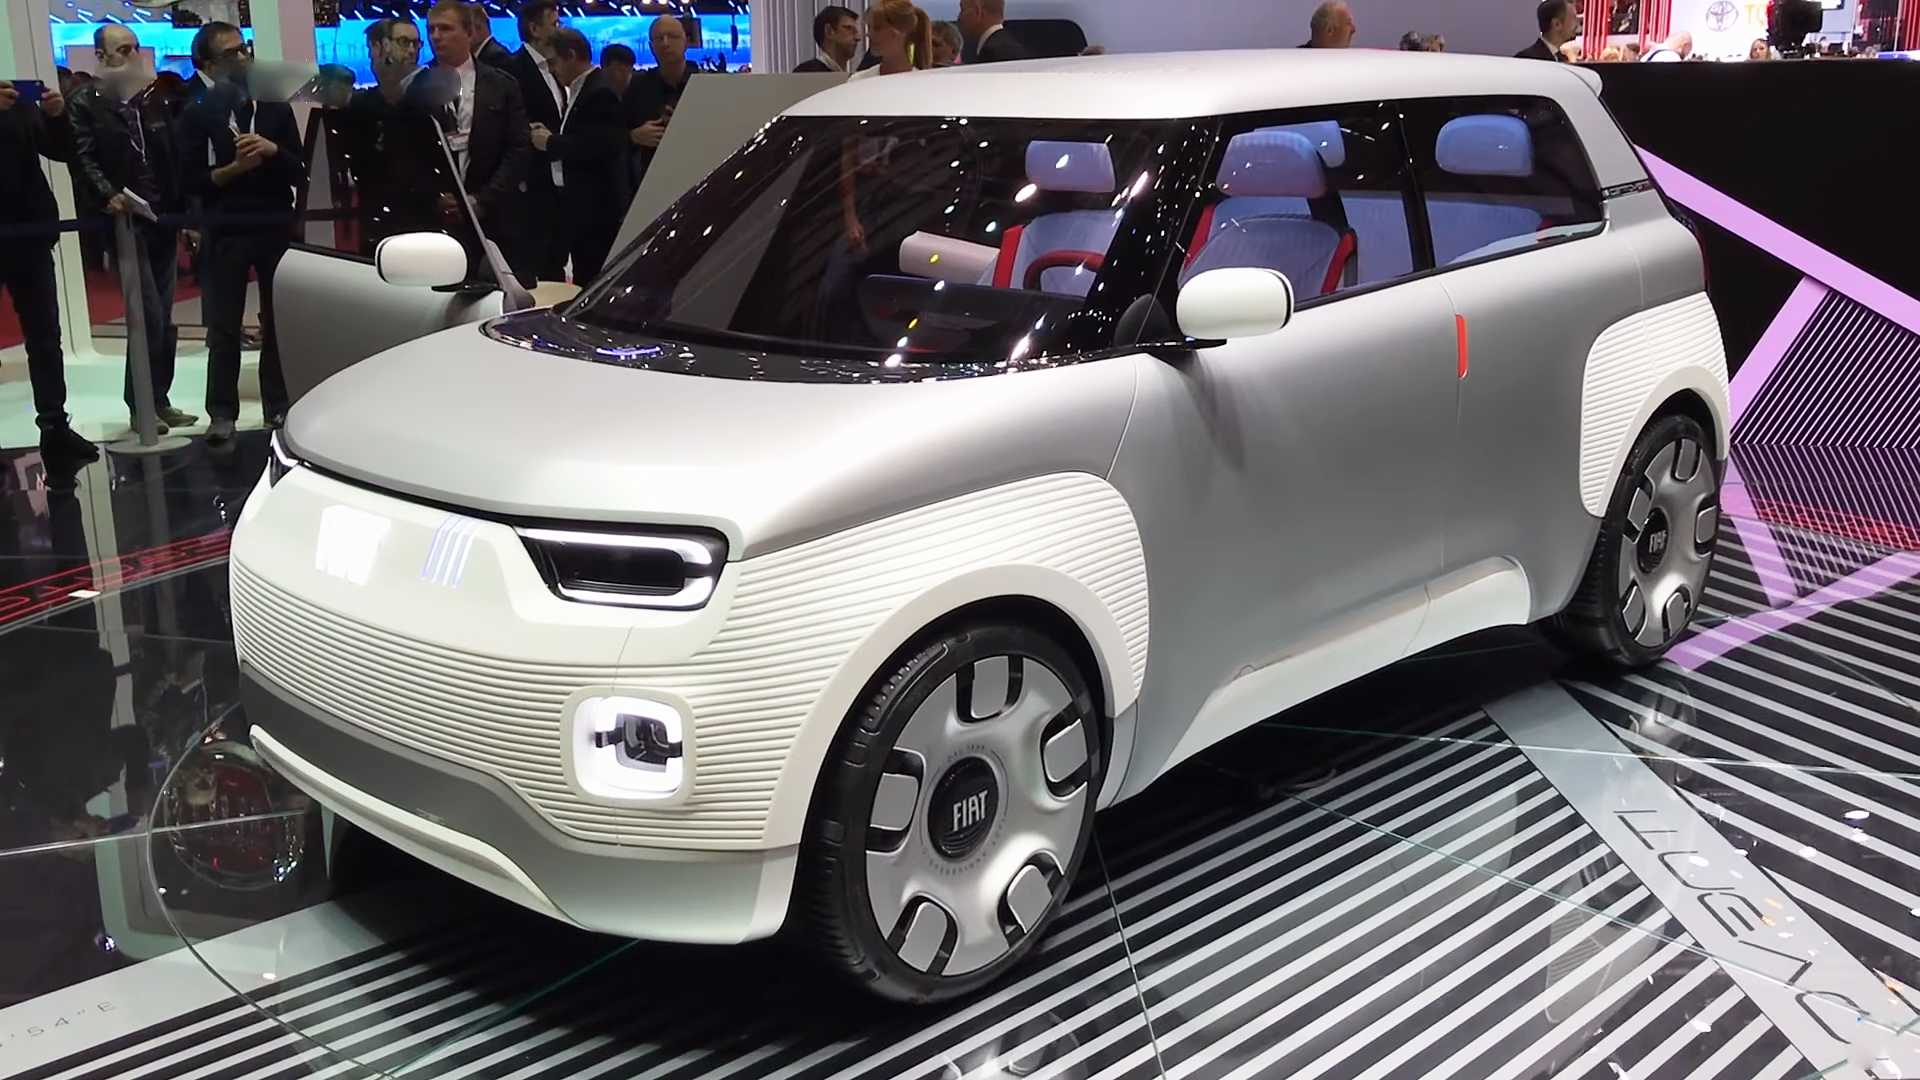 Марка Fiat представила электрический концепт-конструктор — Centoventi 